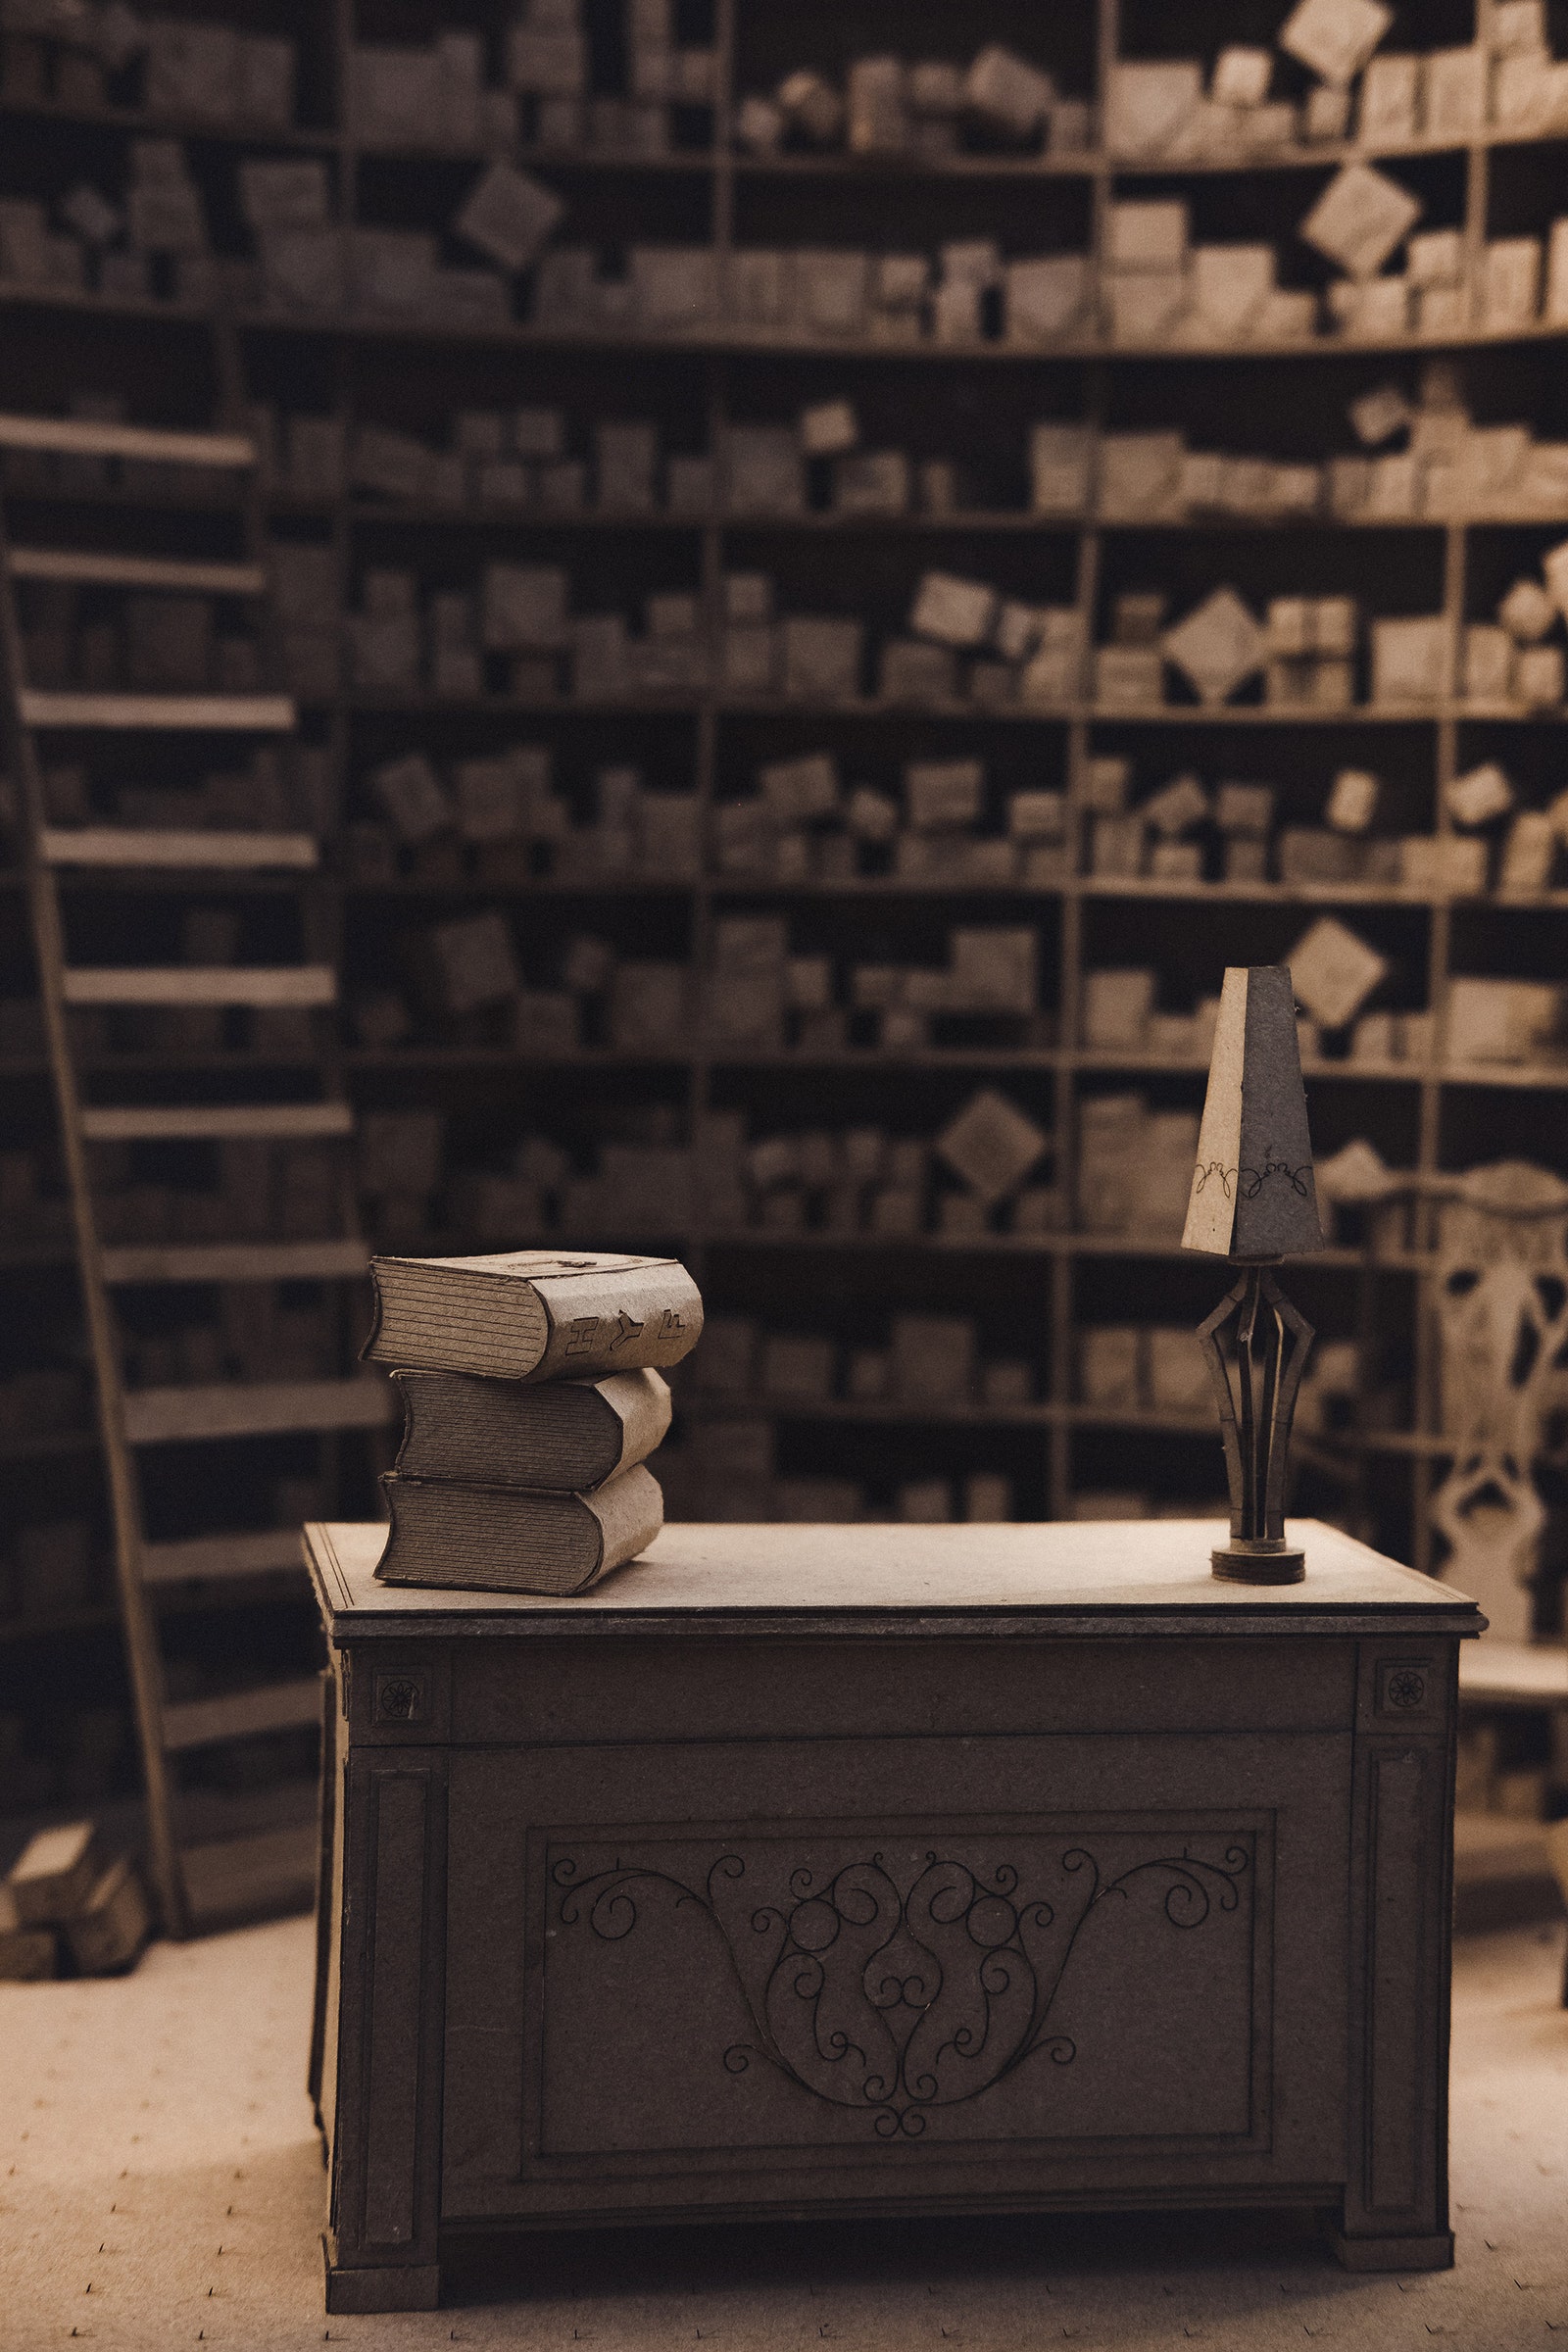 Интерьеры из “Гарри Поттера” в миниатюрных моделях из картона